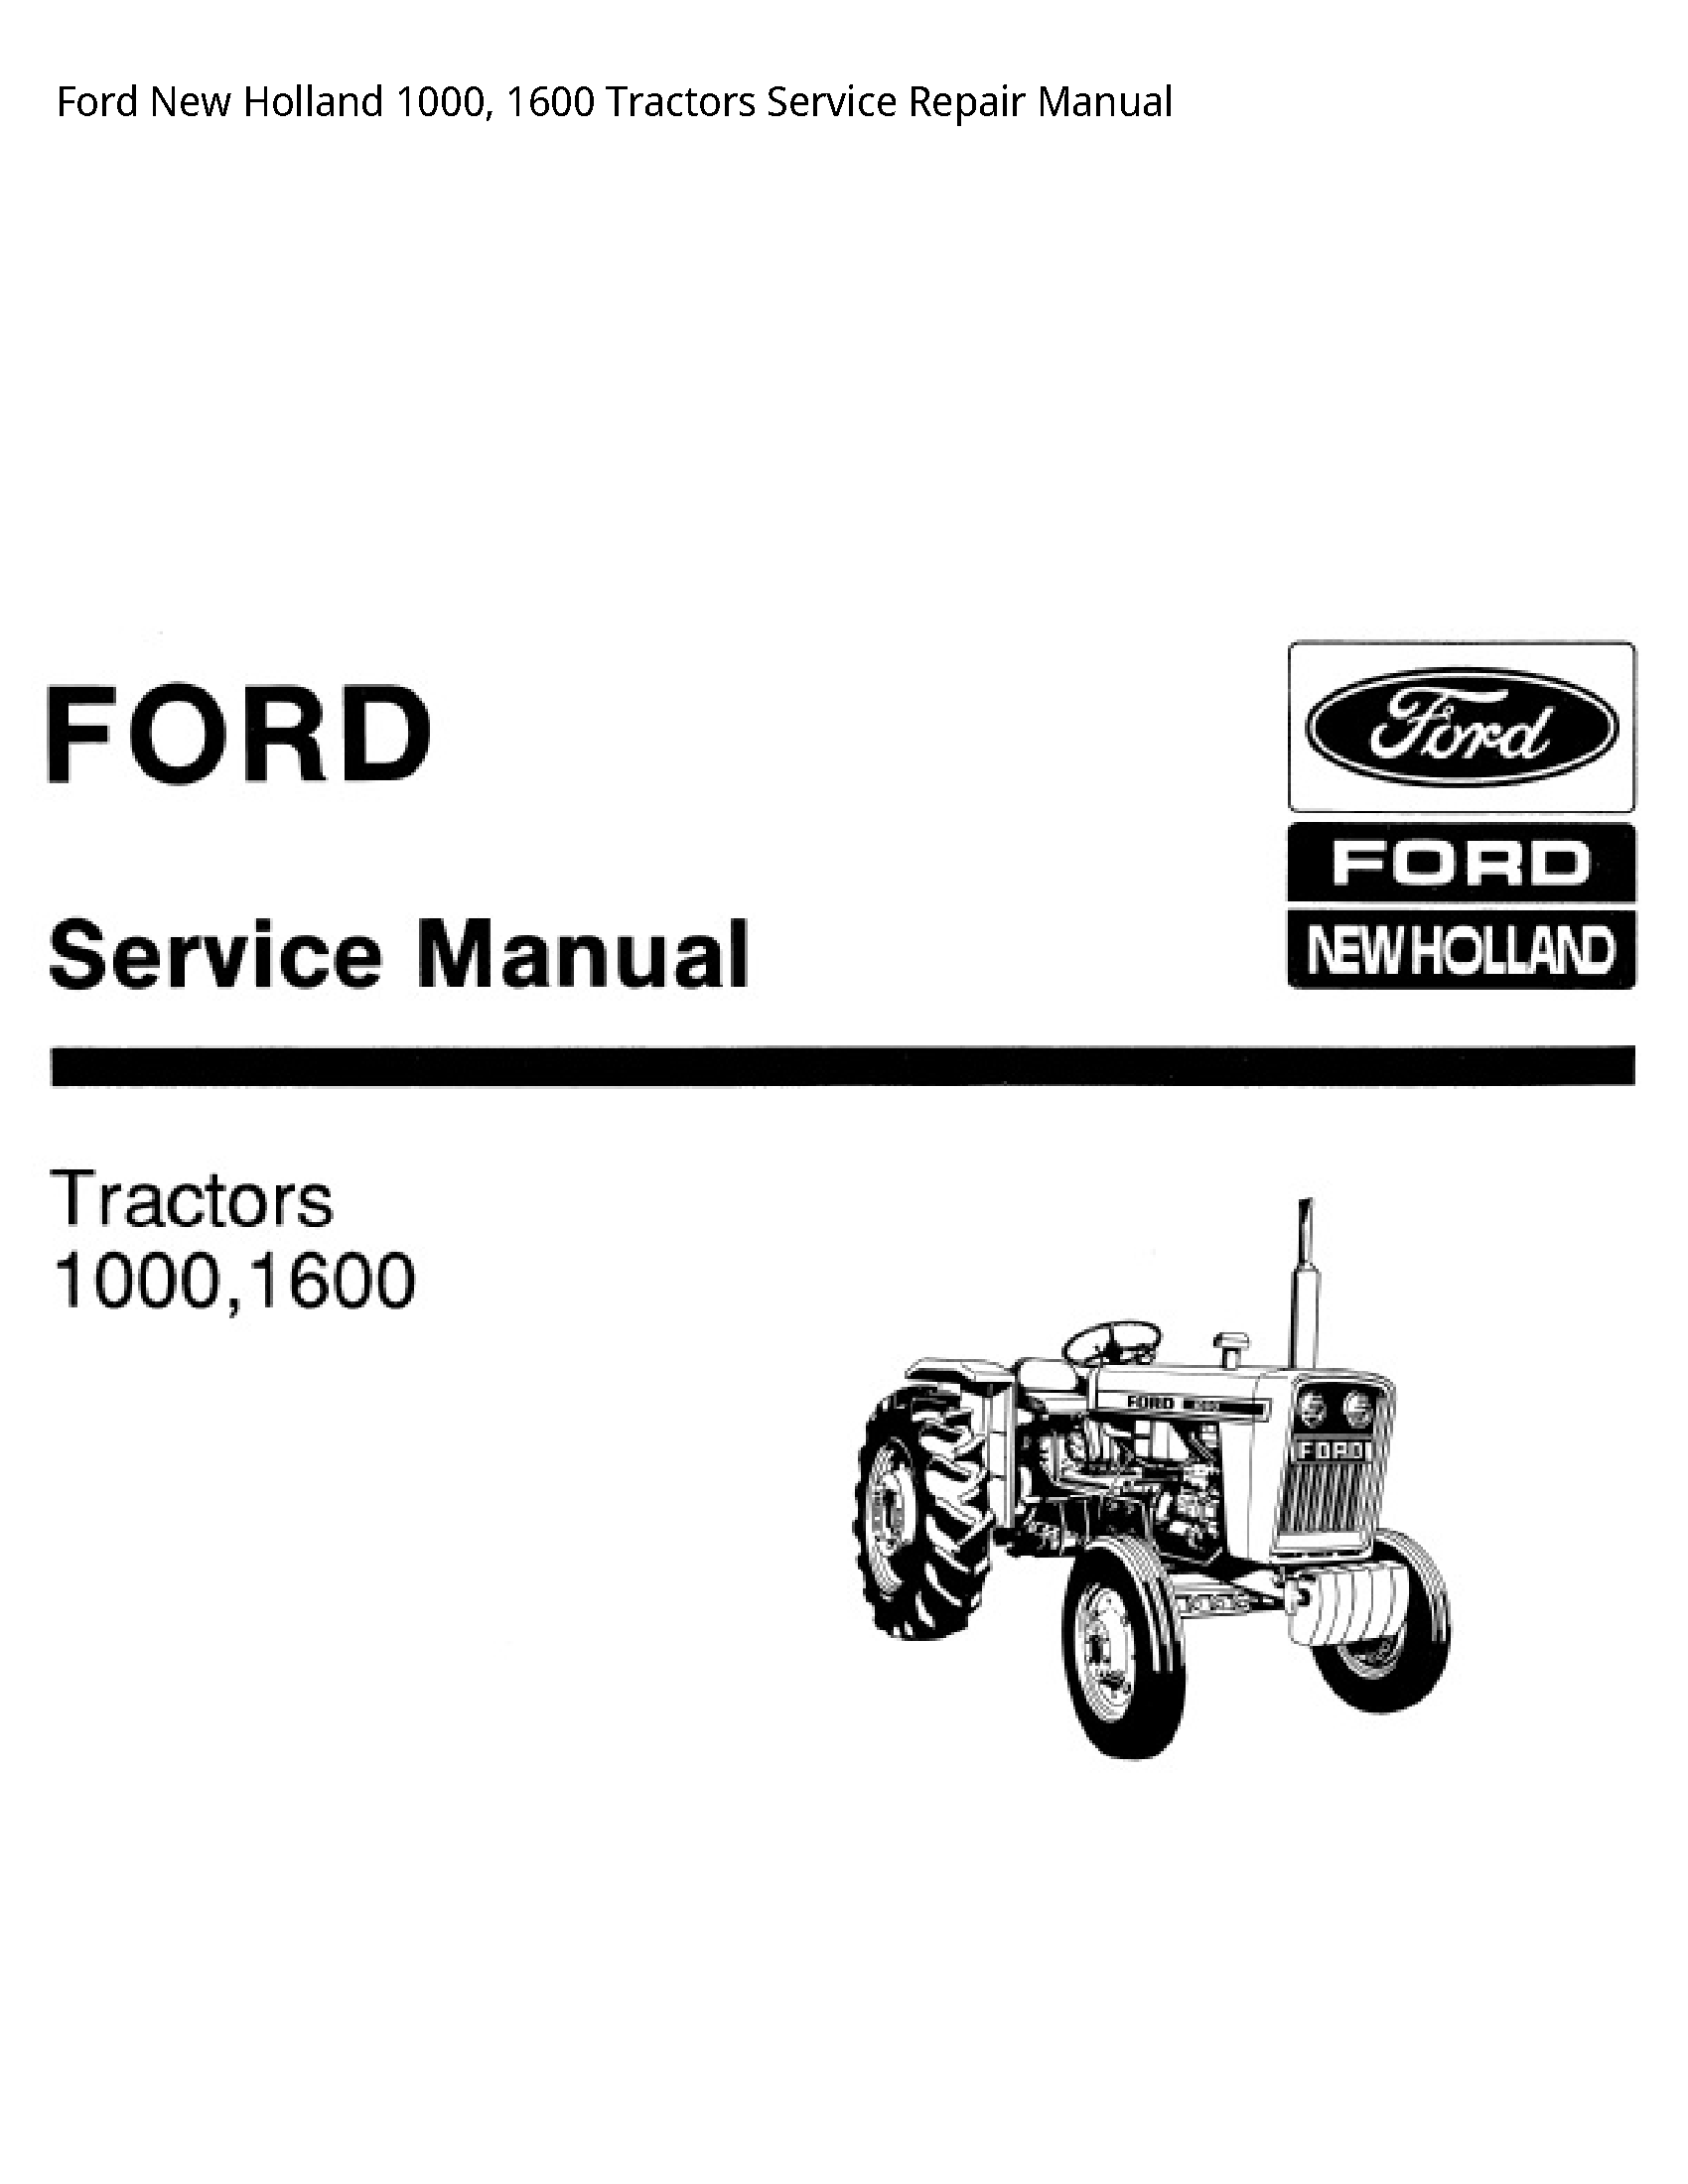  1000 Tractors manual